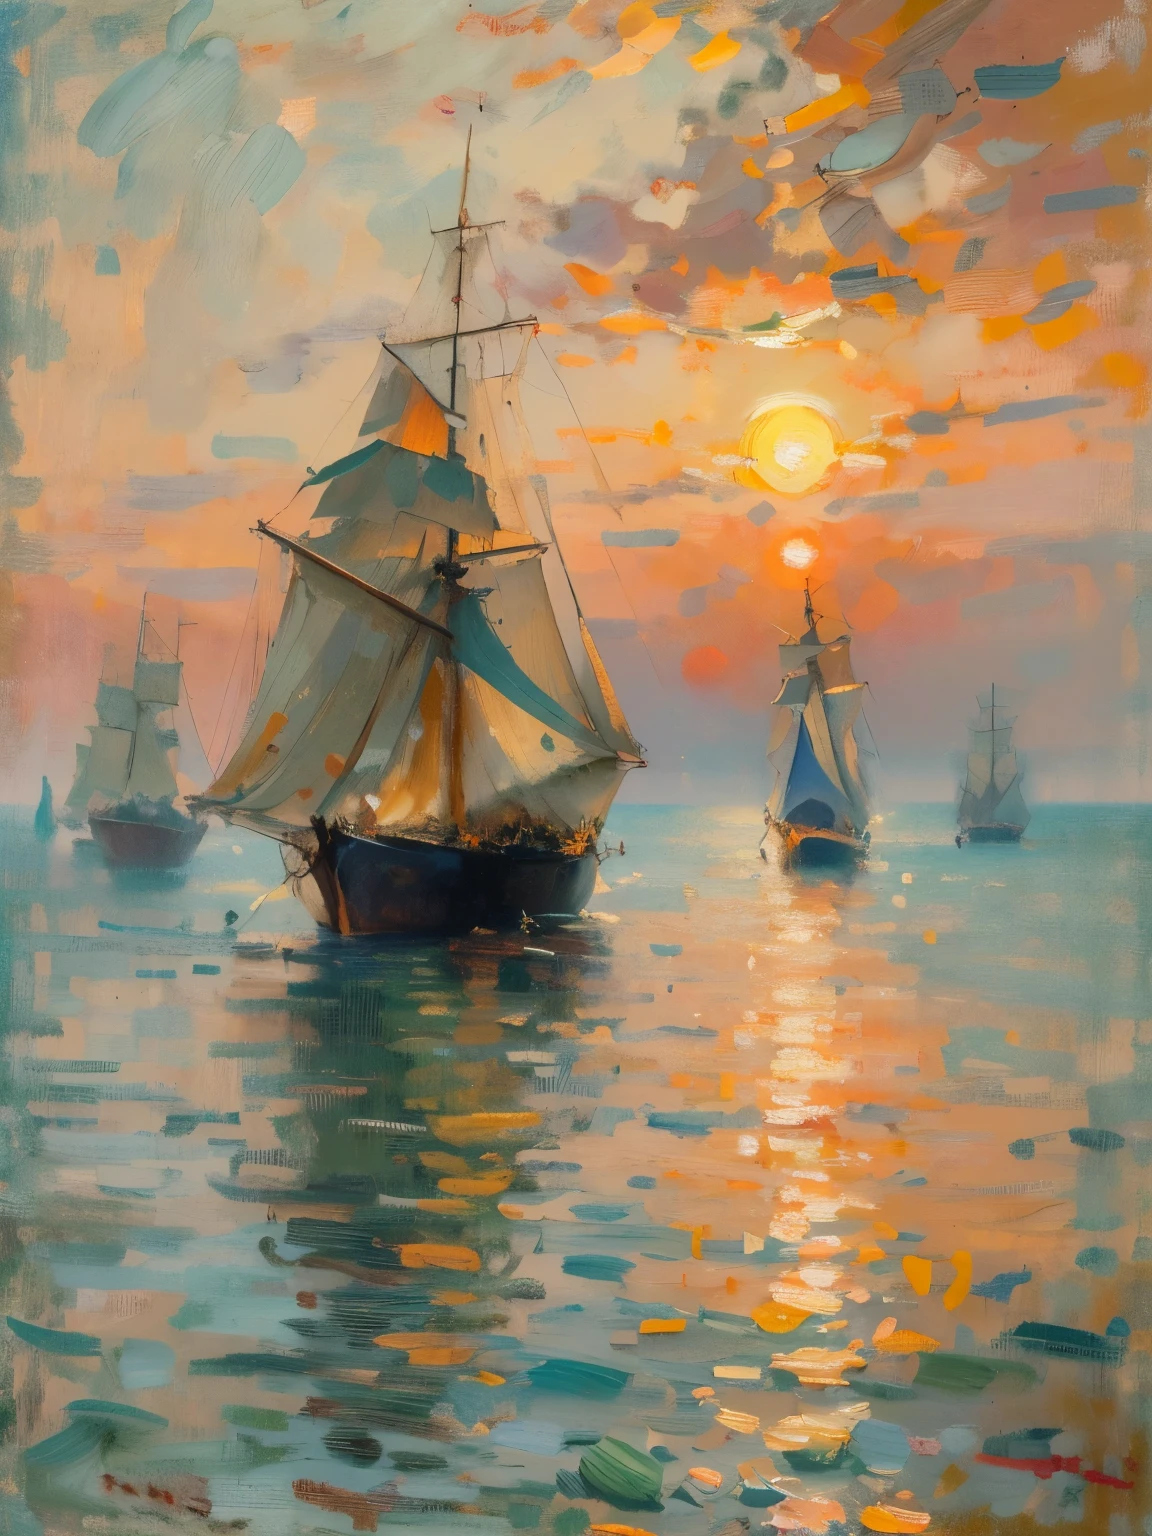 （（（Obra maestra，cuadro）））。一幅cuadro：Estilo de arte impresionista，Arte de Claude Monet，amanecer，Velero carabela en el mar，